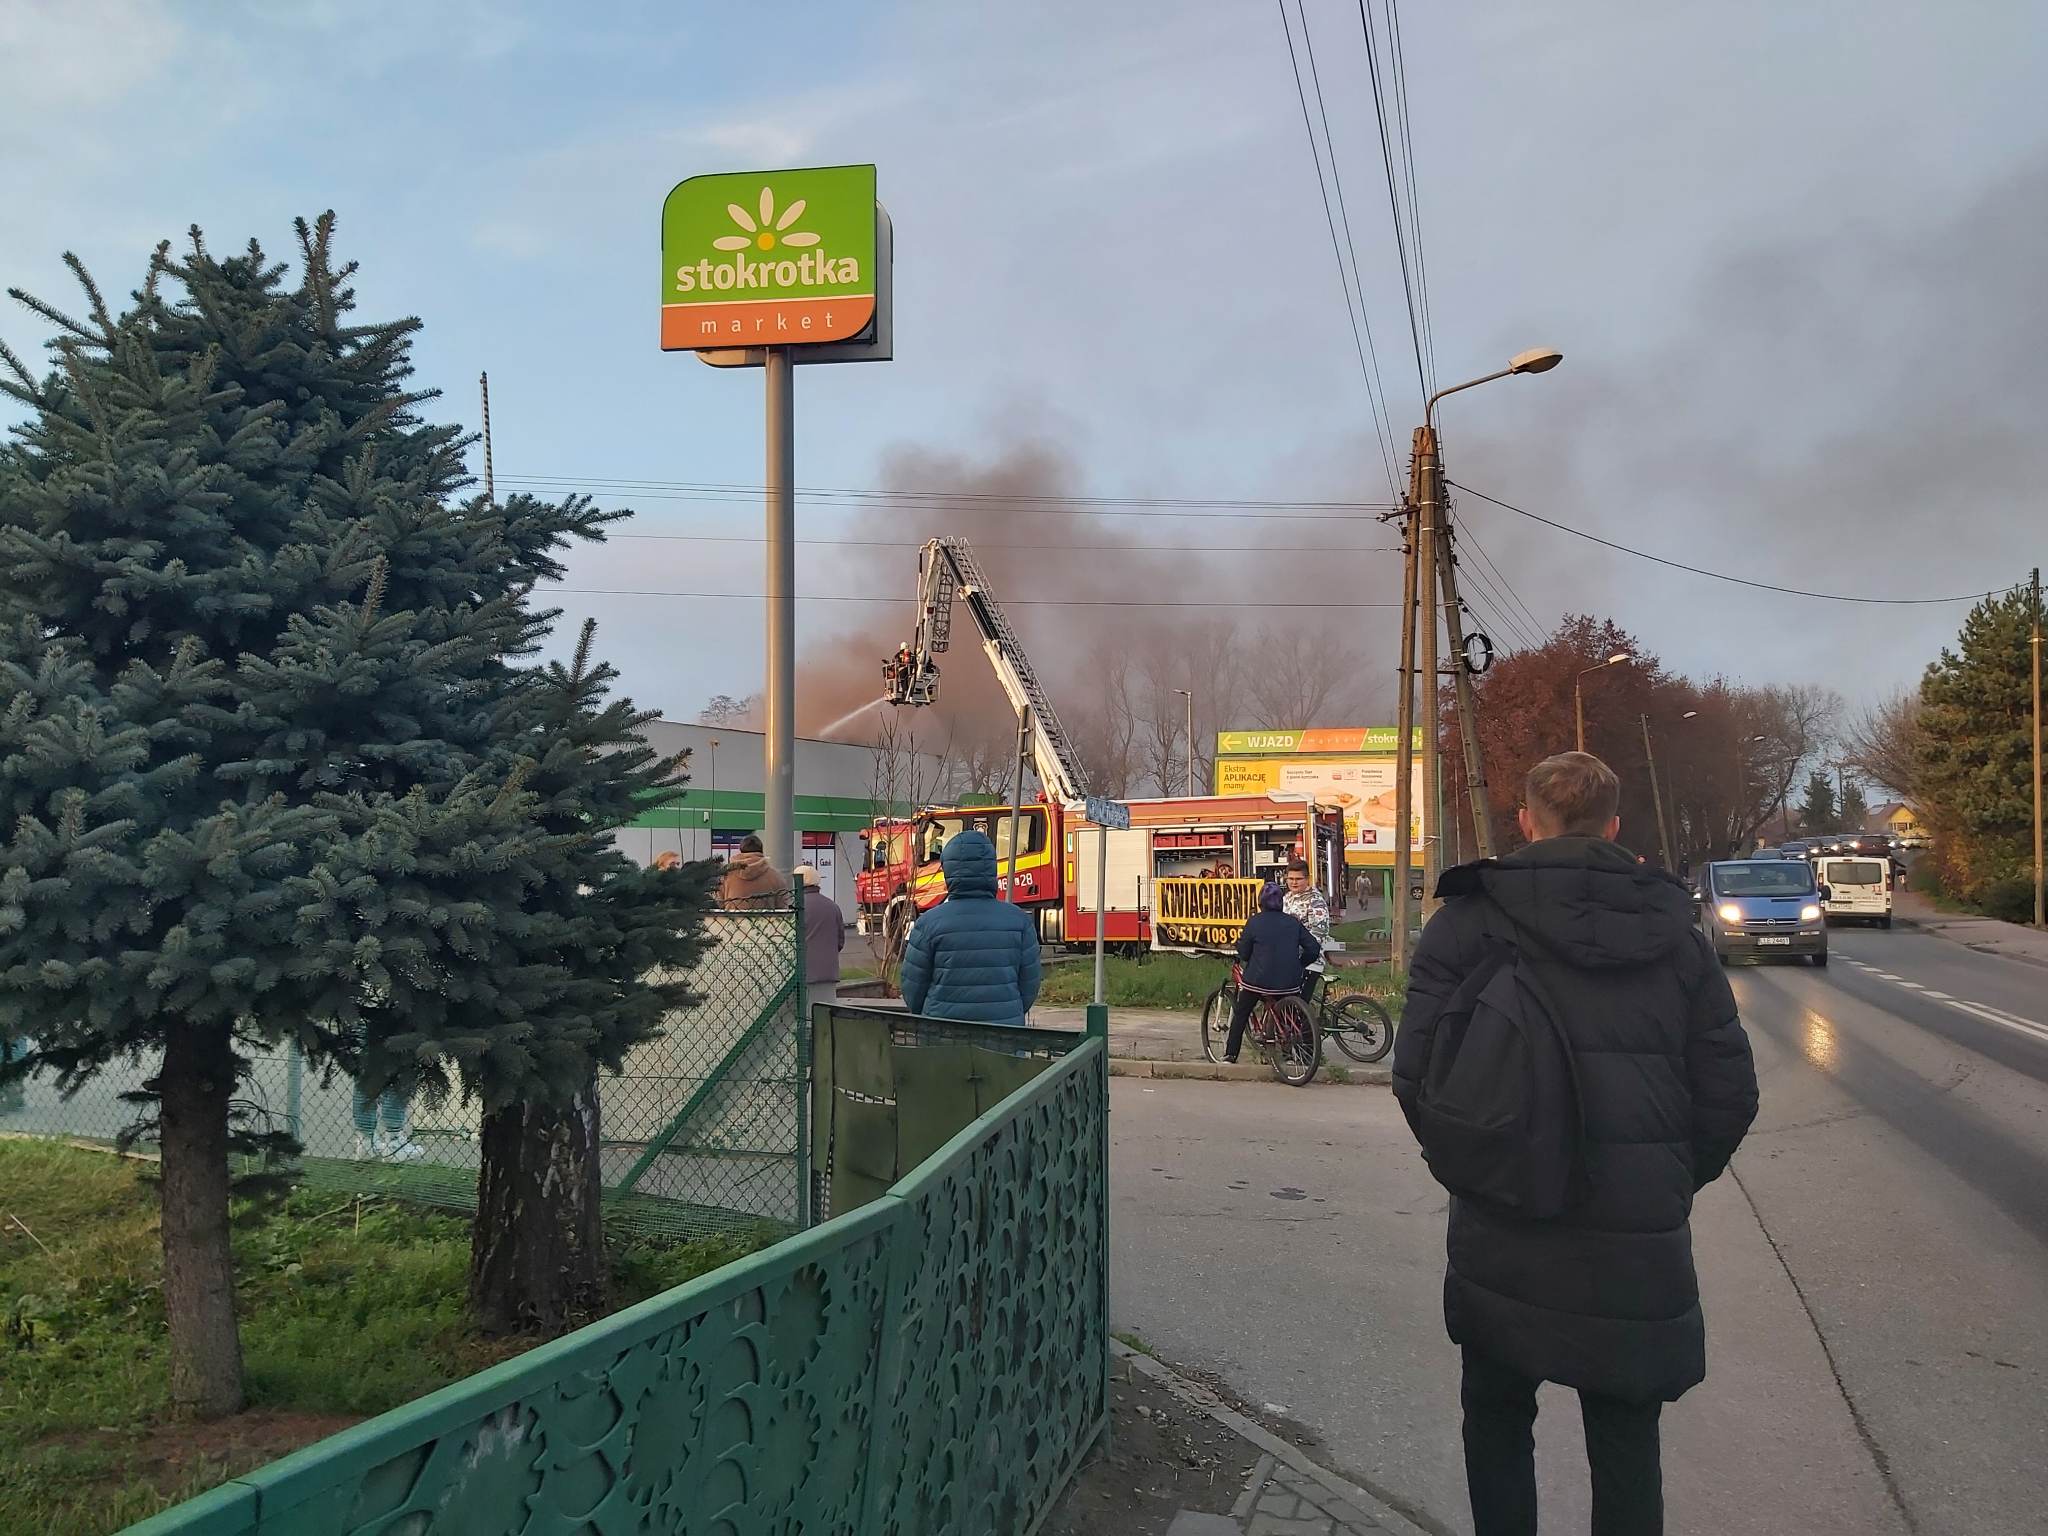 Ponad 5 mln złotych strat po pożarze sklepu Stokrotka. Wszystko przez nieostrożność pracowników (zdjęcia, wideo)